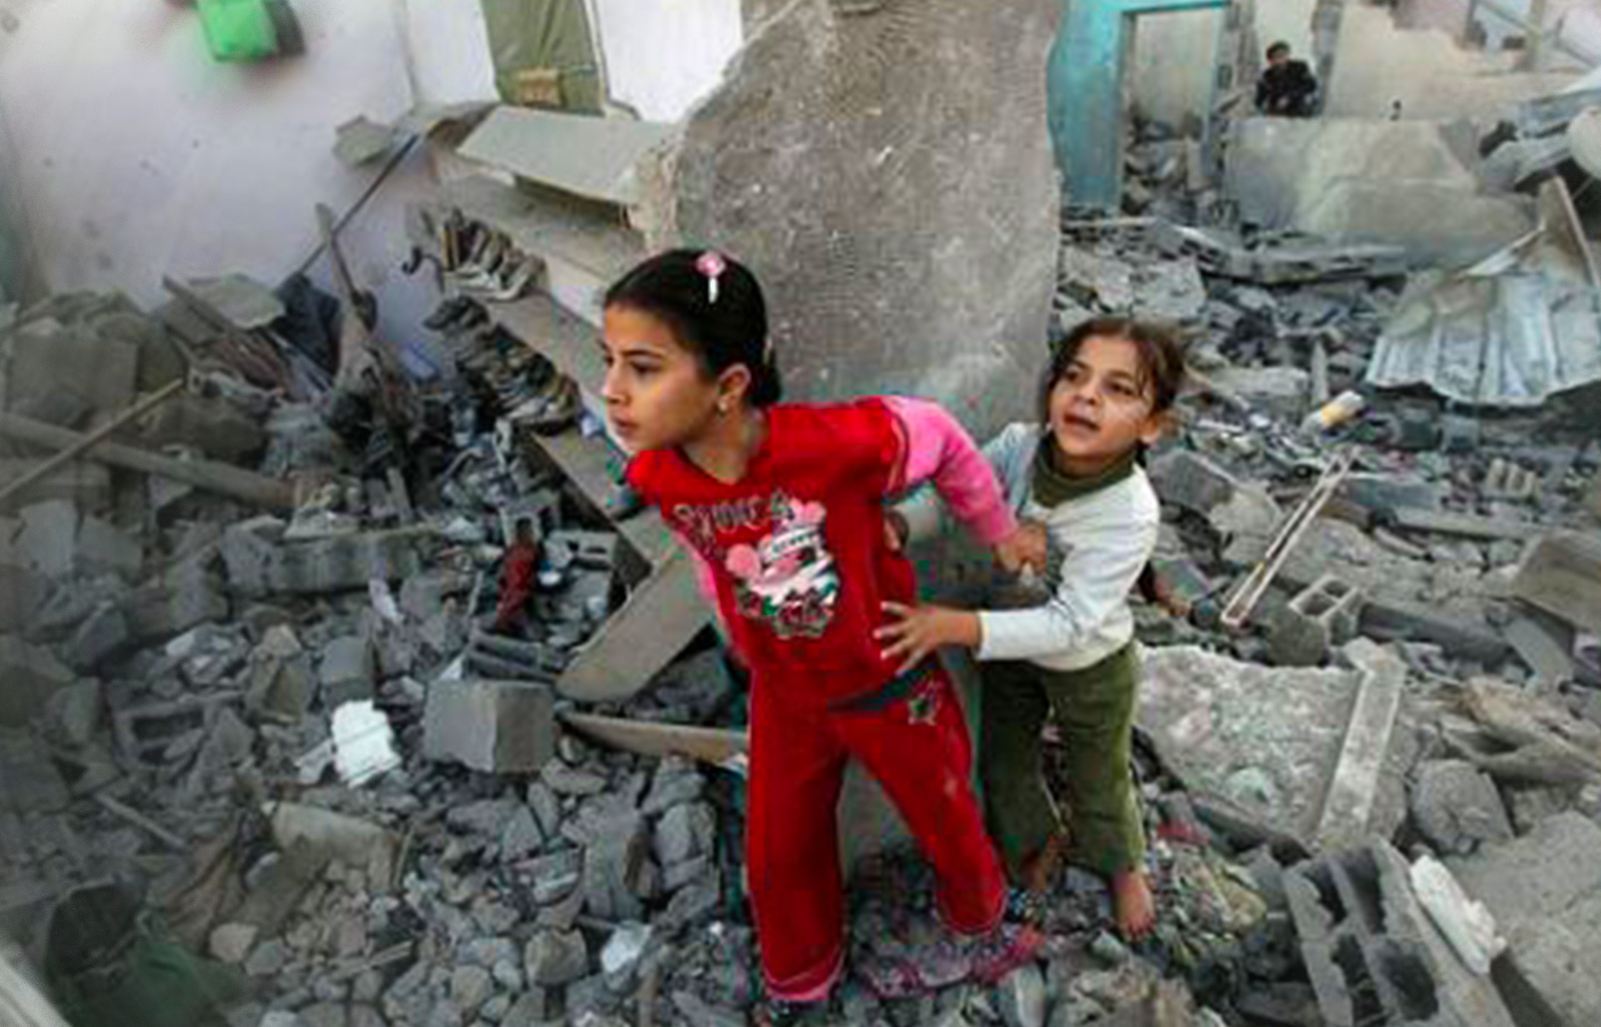 Les enfants de Gaza vivent dans le cercle vicieux de la violence et des traumatismes